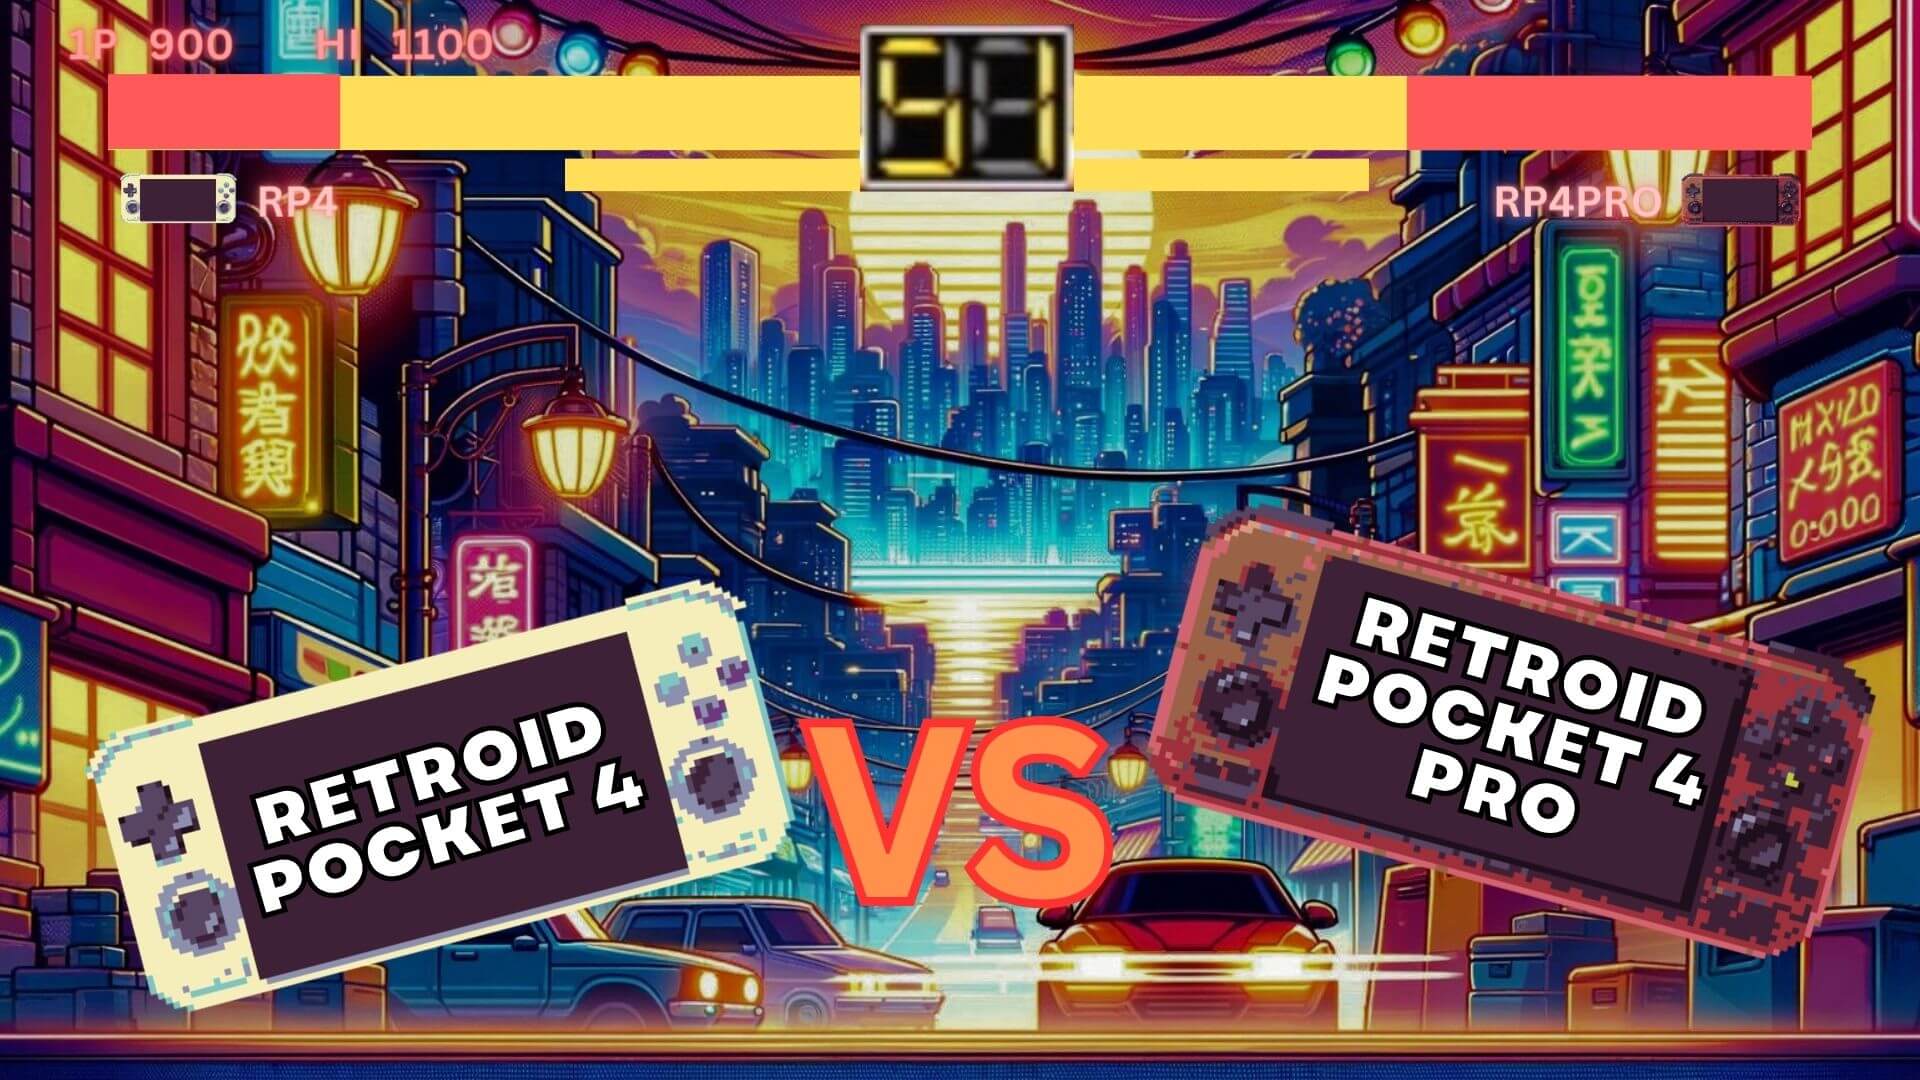 Retroid Pocket 4 vs Retroid Pocket  4 PRO z wideo - Która cena jest najlepsza w stosunku do wydajności?